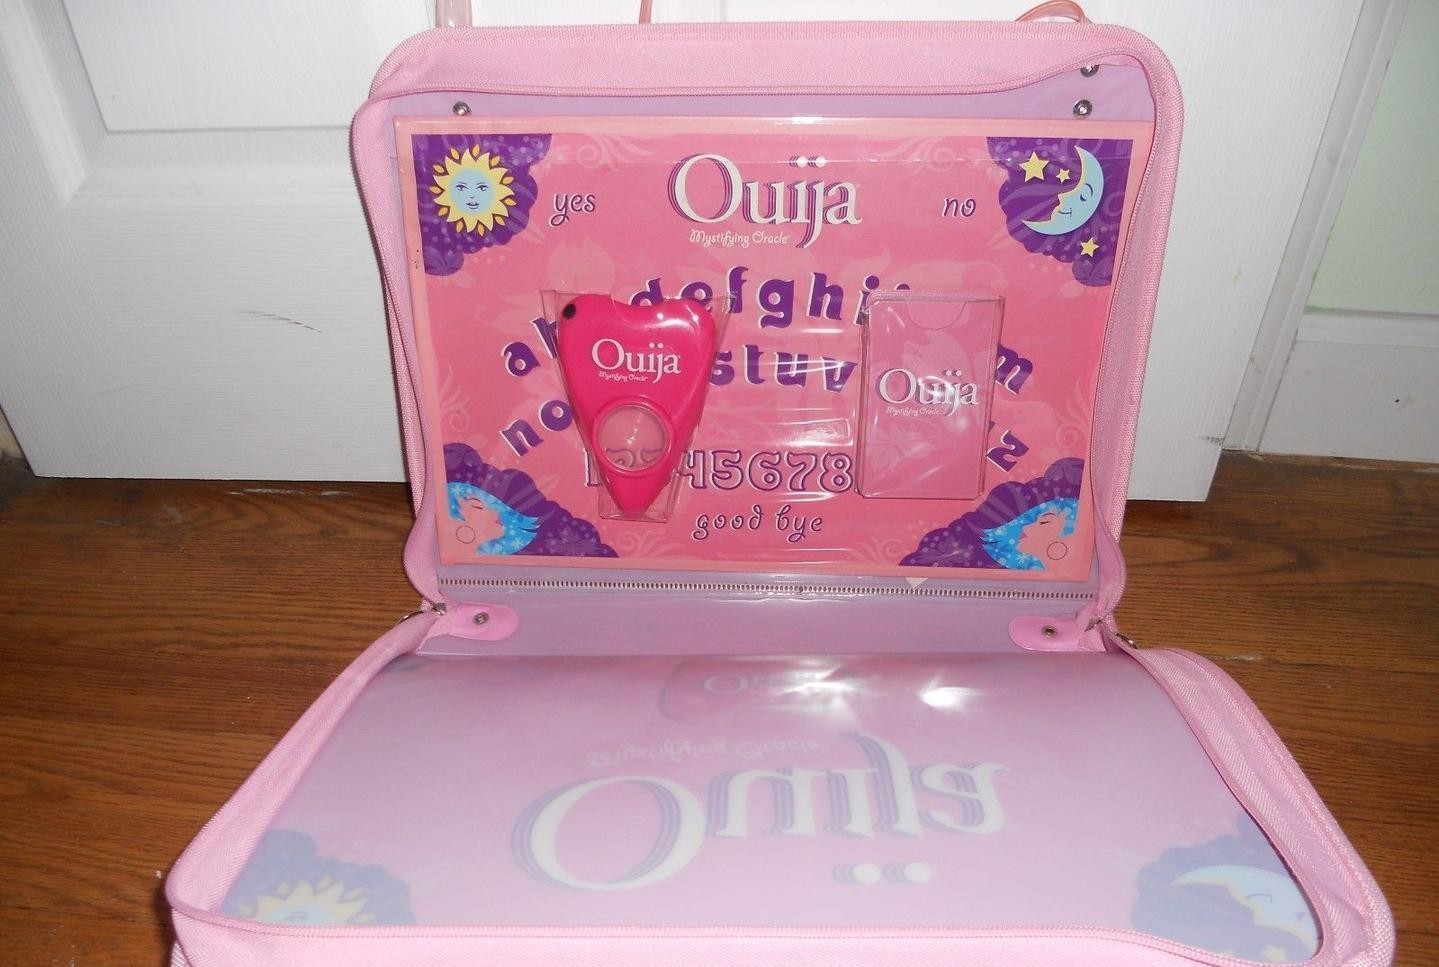 ouija-board-pink-hasbro-mystifying_1_8abf338cd9333604c70f931e512ac8cd (2)